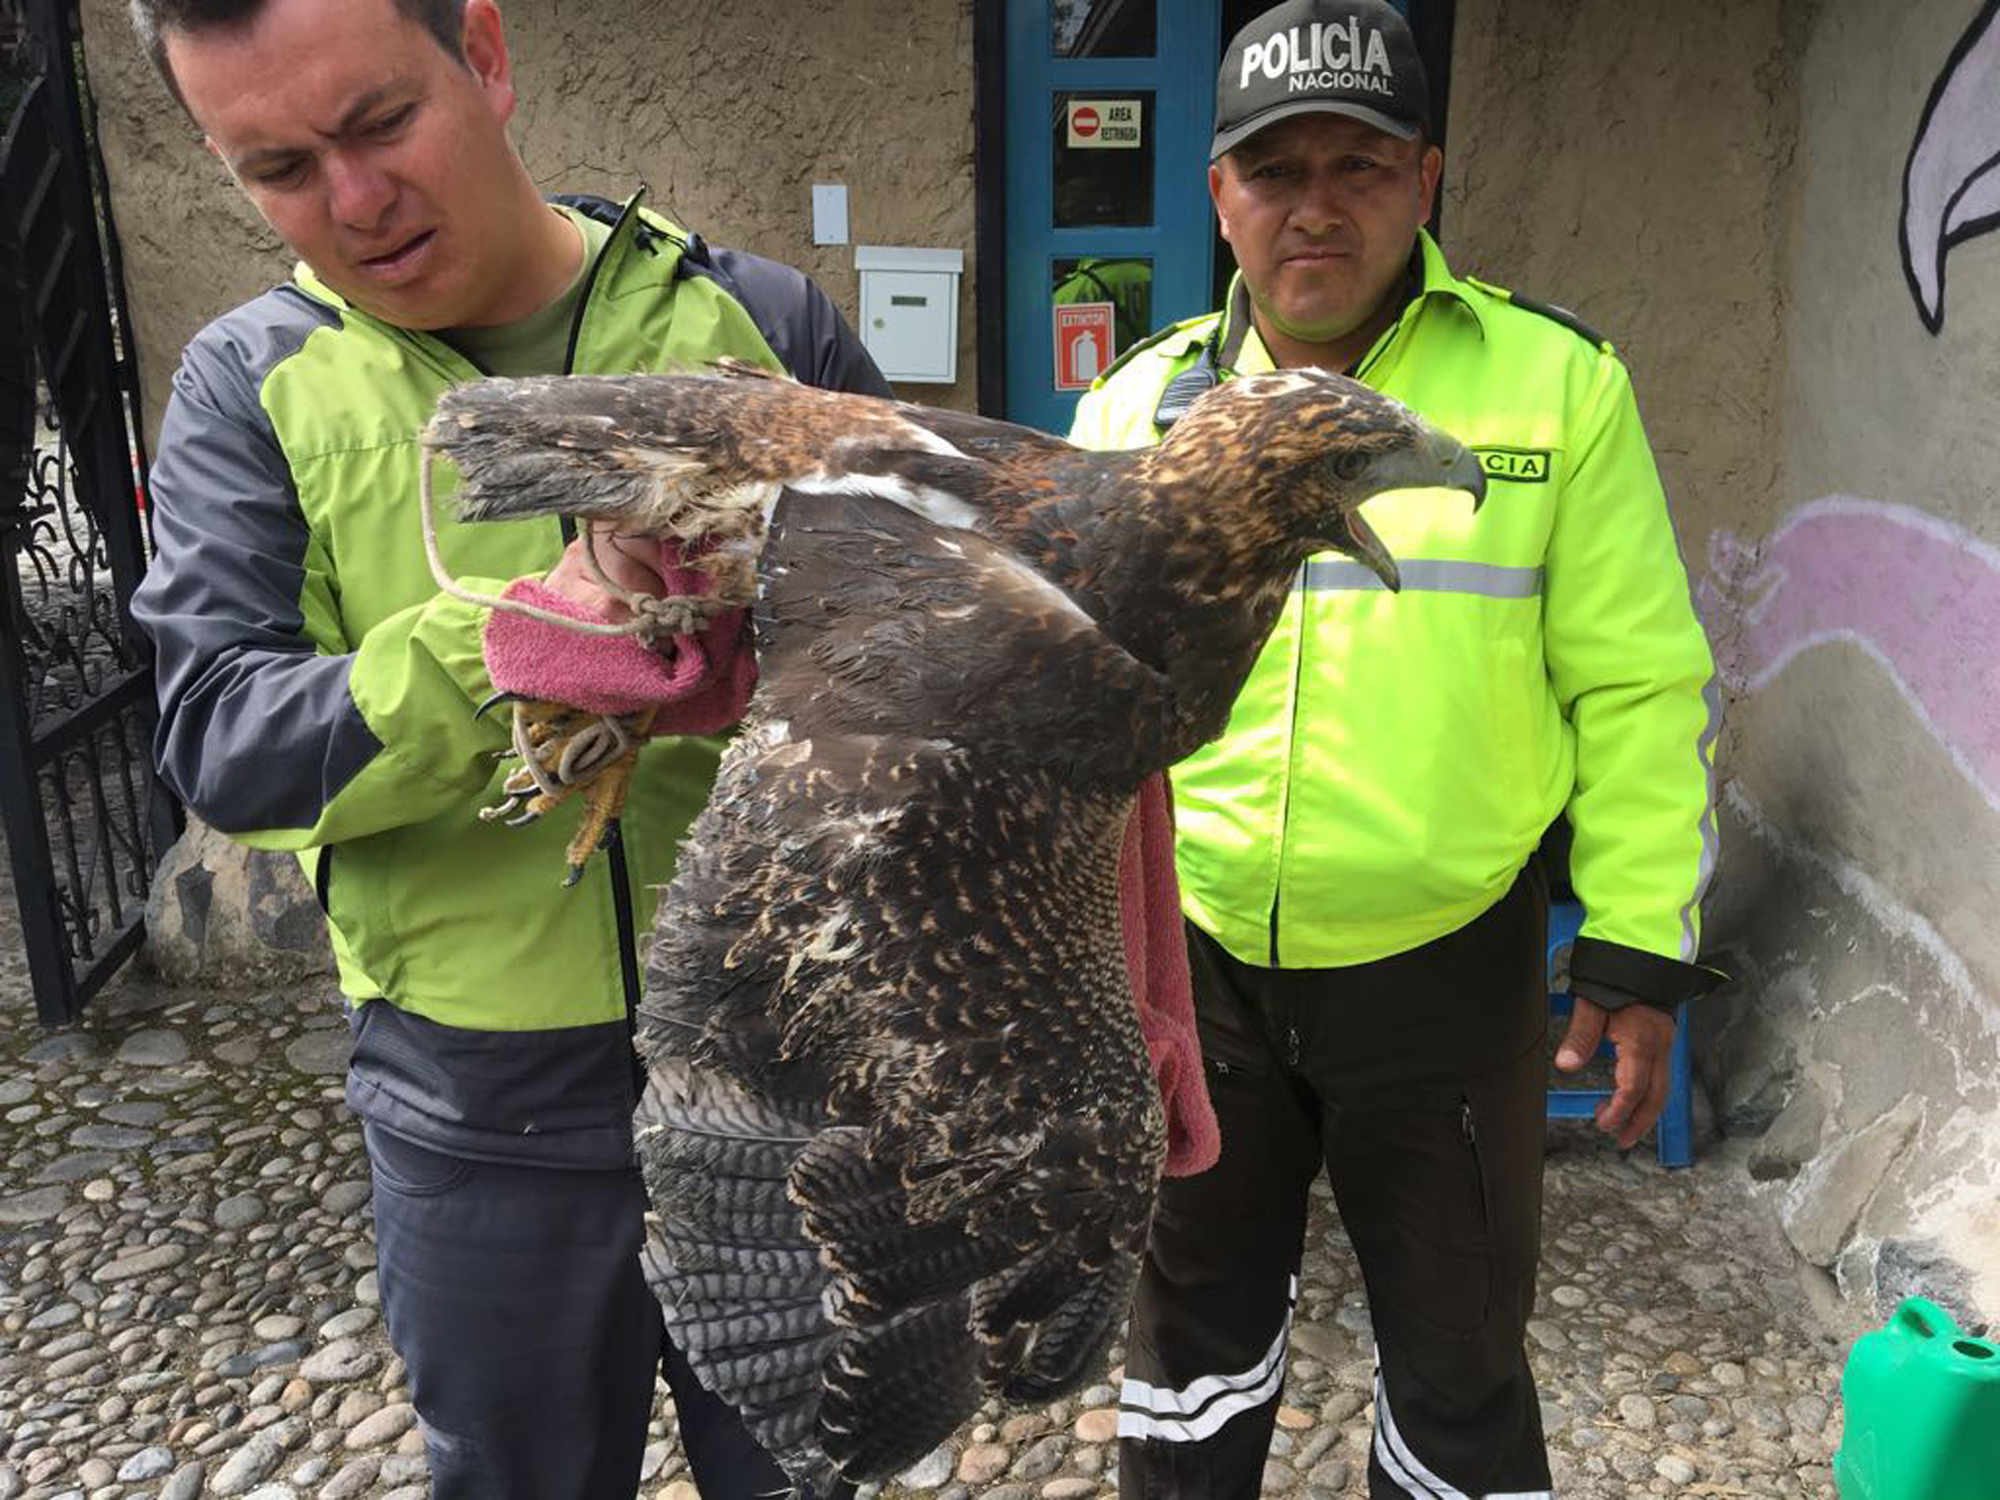 Ecuadorian police officers inspect a bird of prey